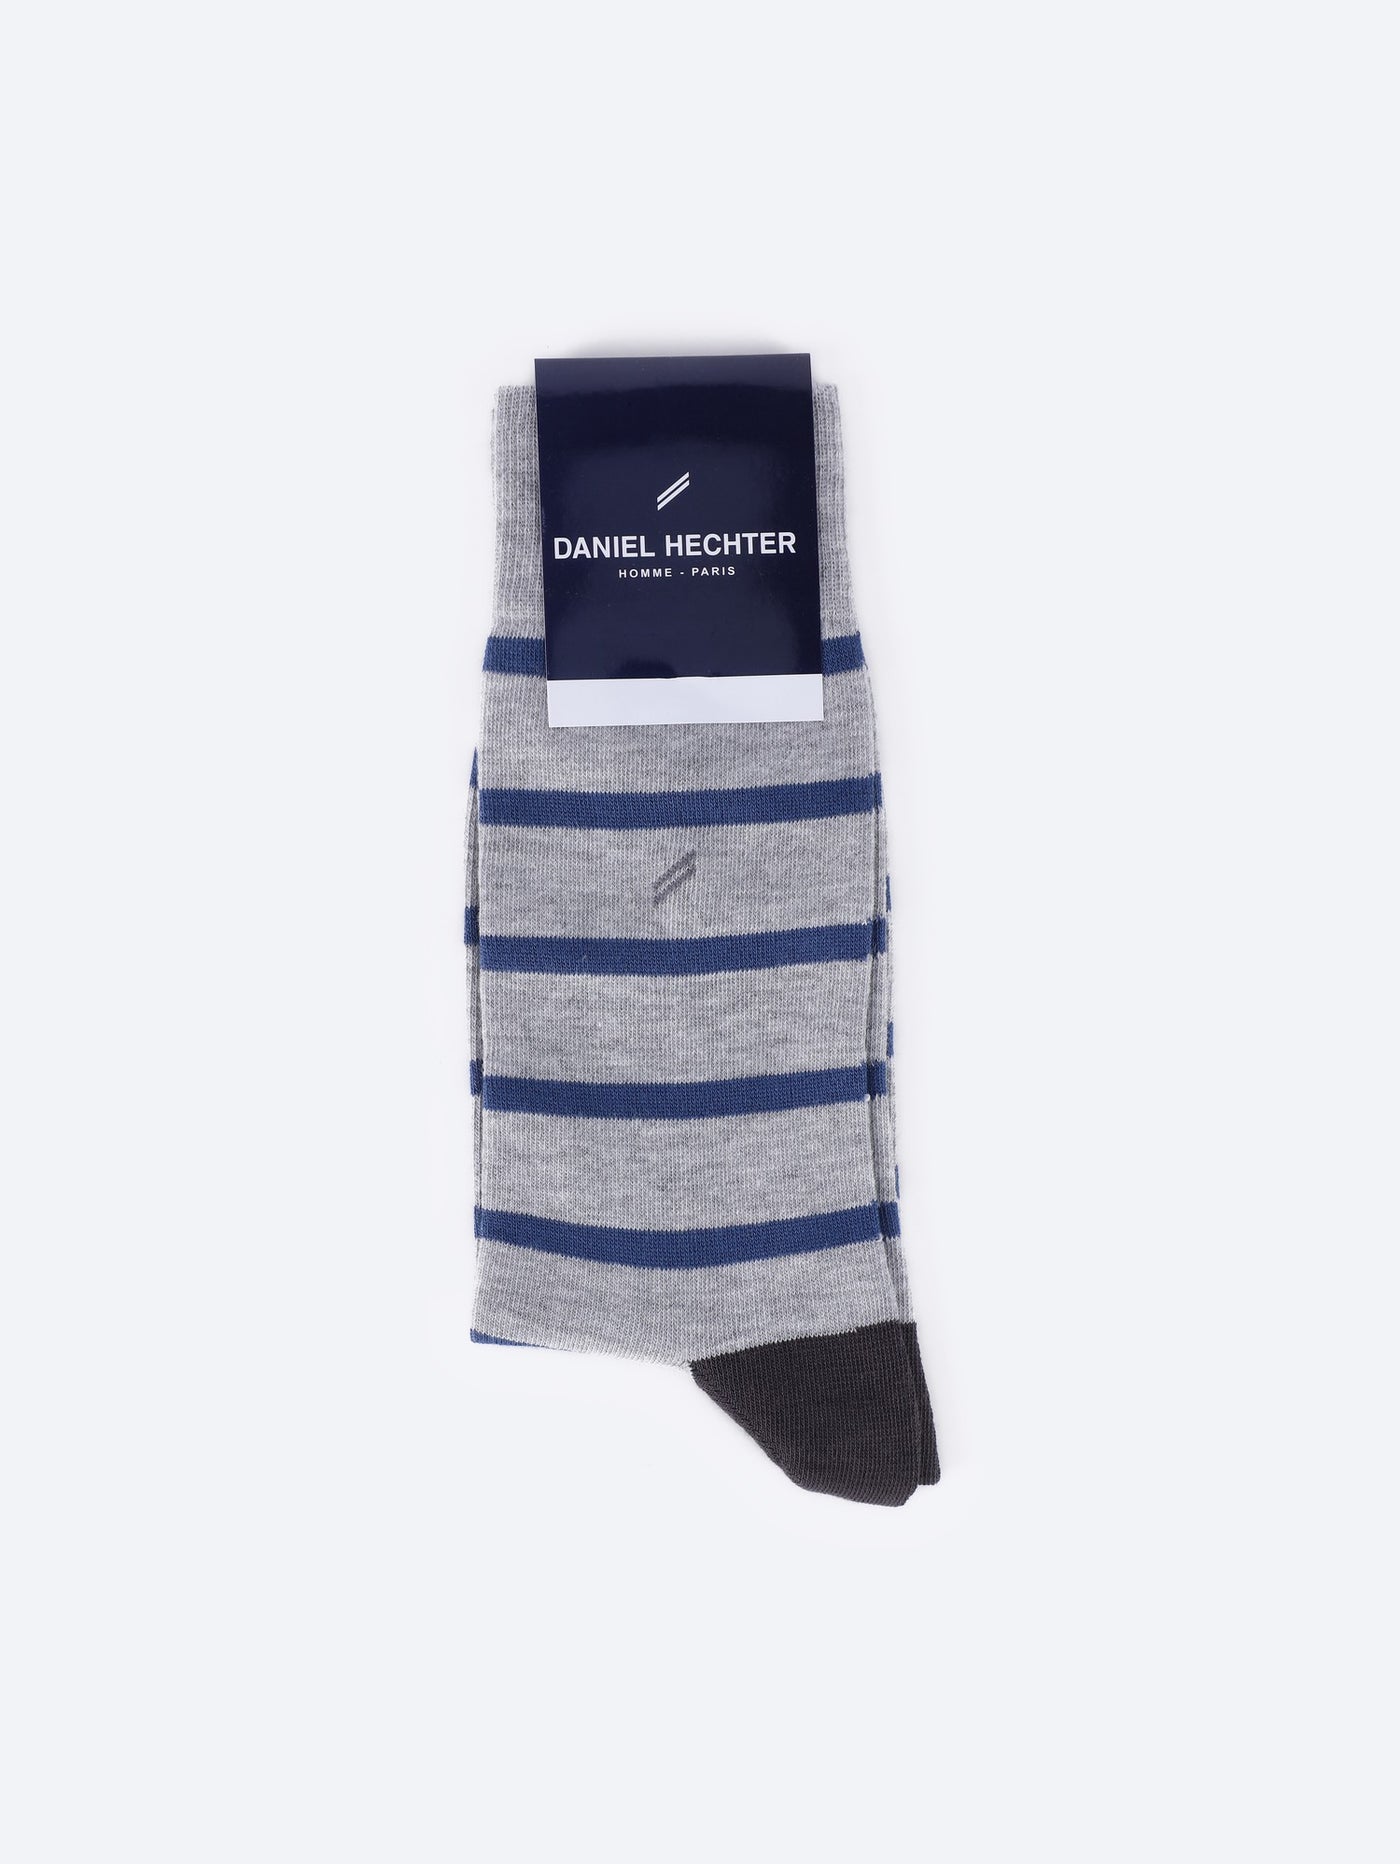 Daniel Hechter Men's Long Striped Socks